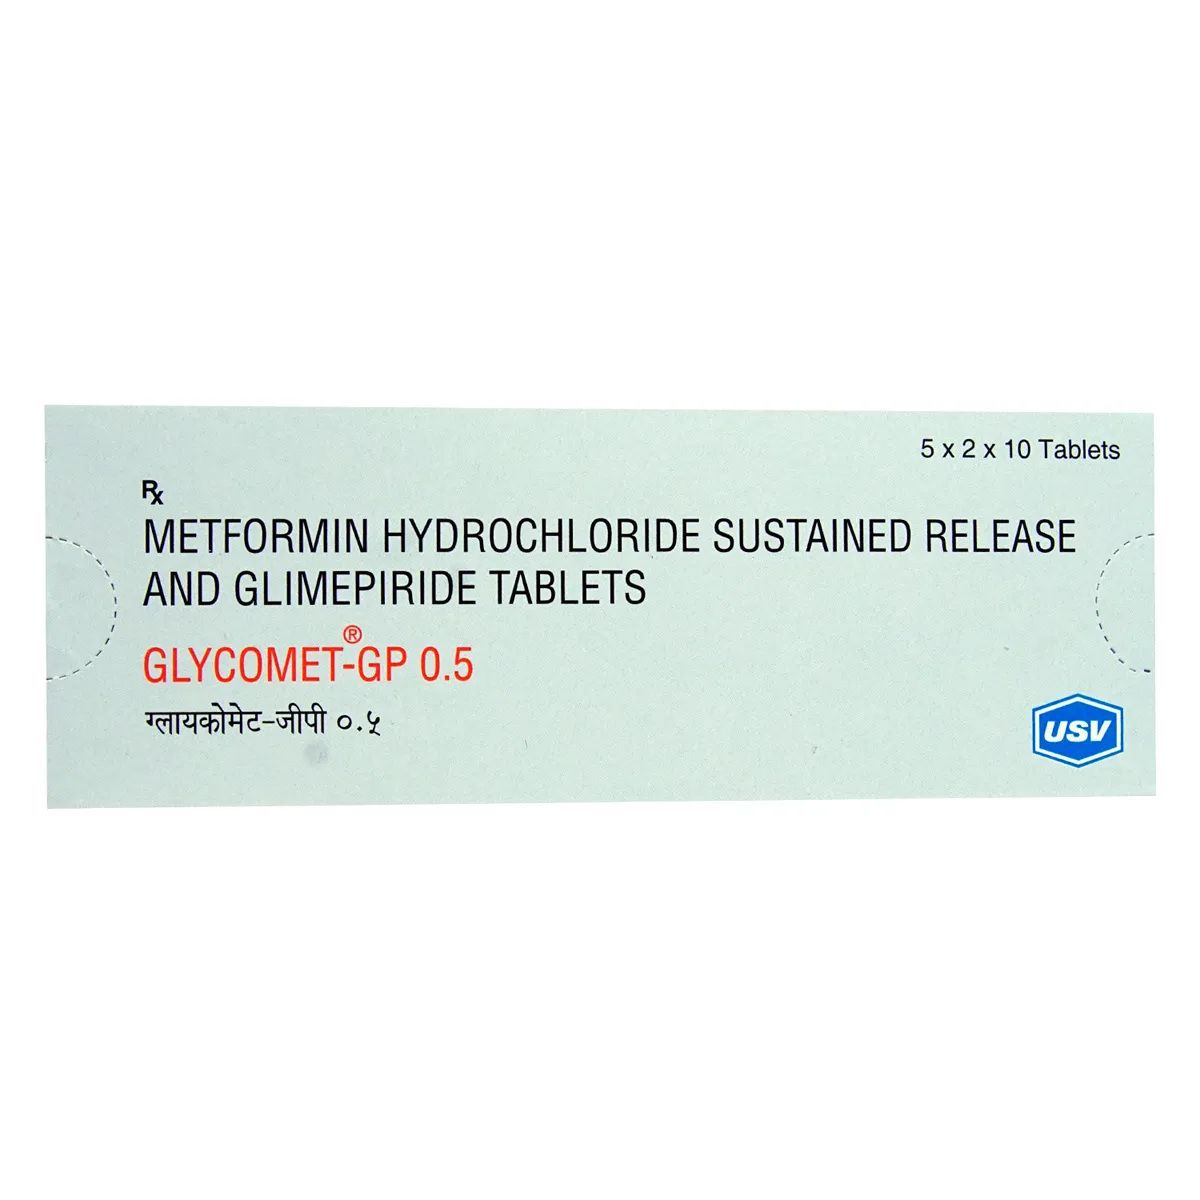 Glycomet-GP 0.5 Tablet SR